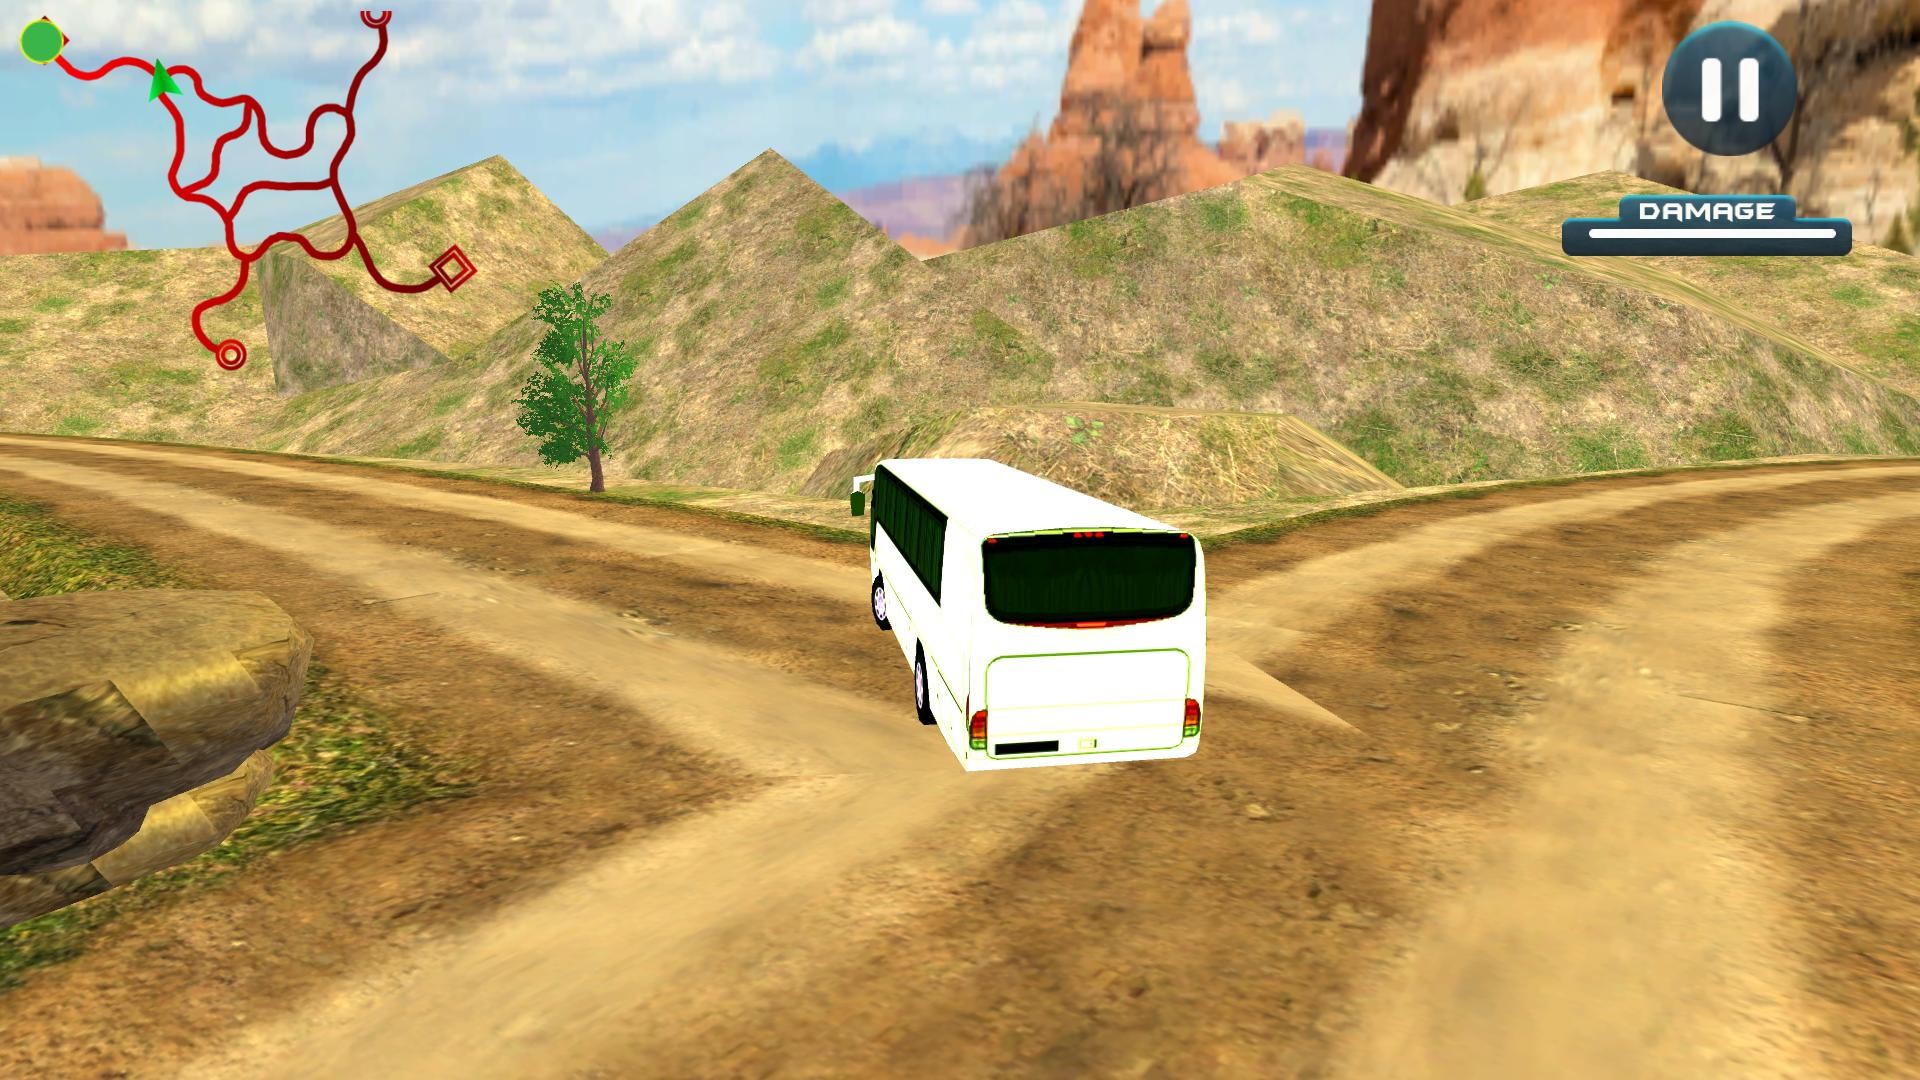 Bus Driver Simulator 2023 for mac download